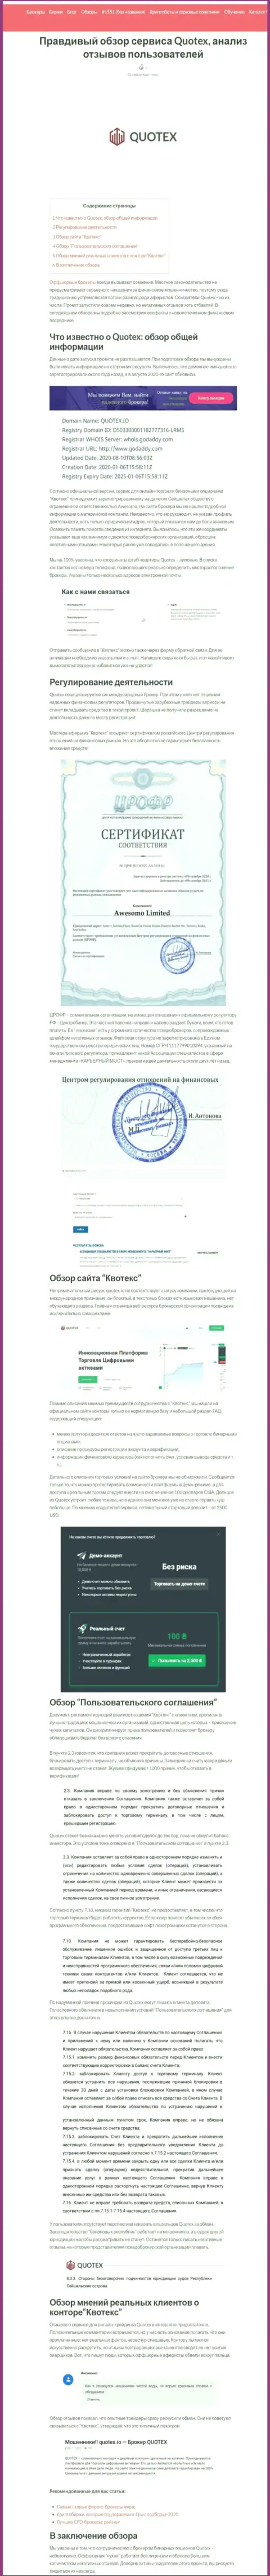 Quotex Io - это контора, совместное сотрудничество с которой доставляет только потери (обзор мошеннических деяний)